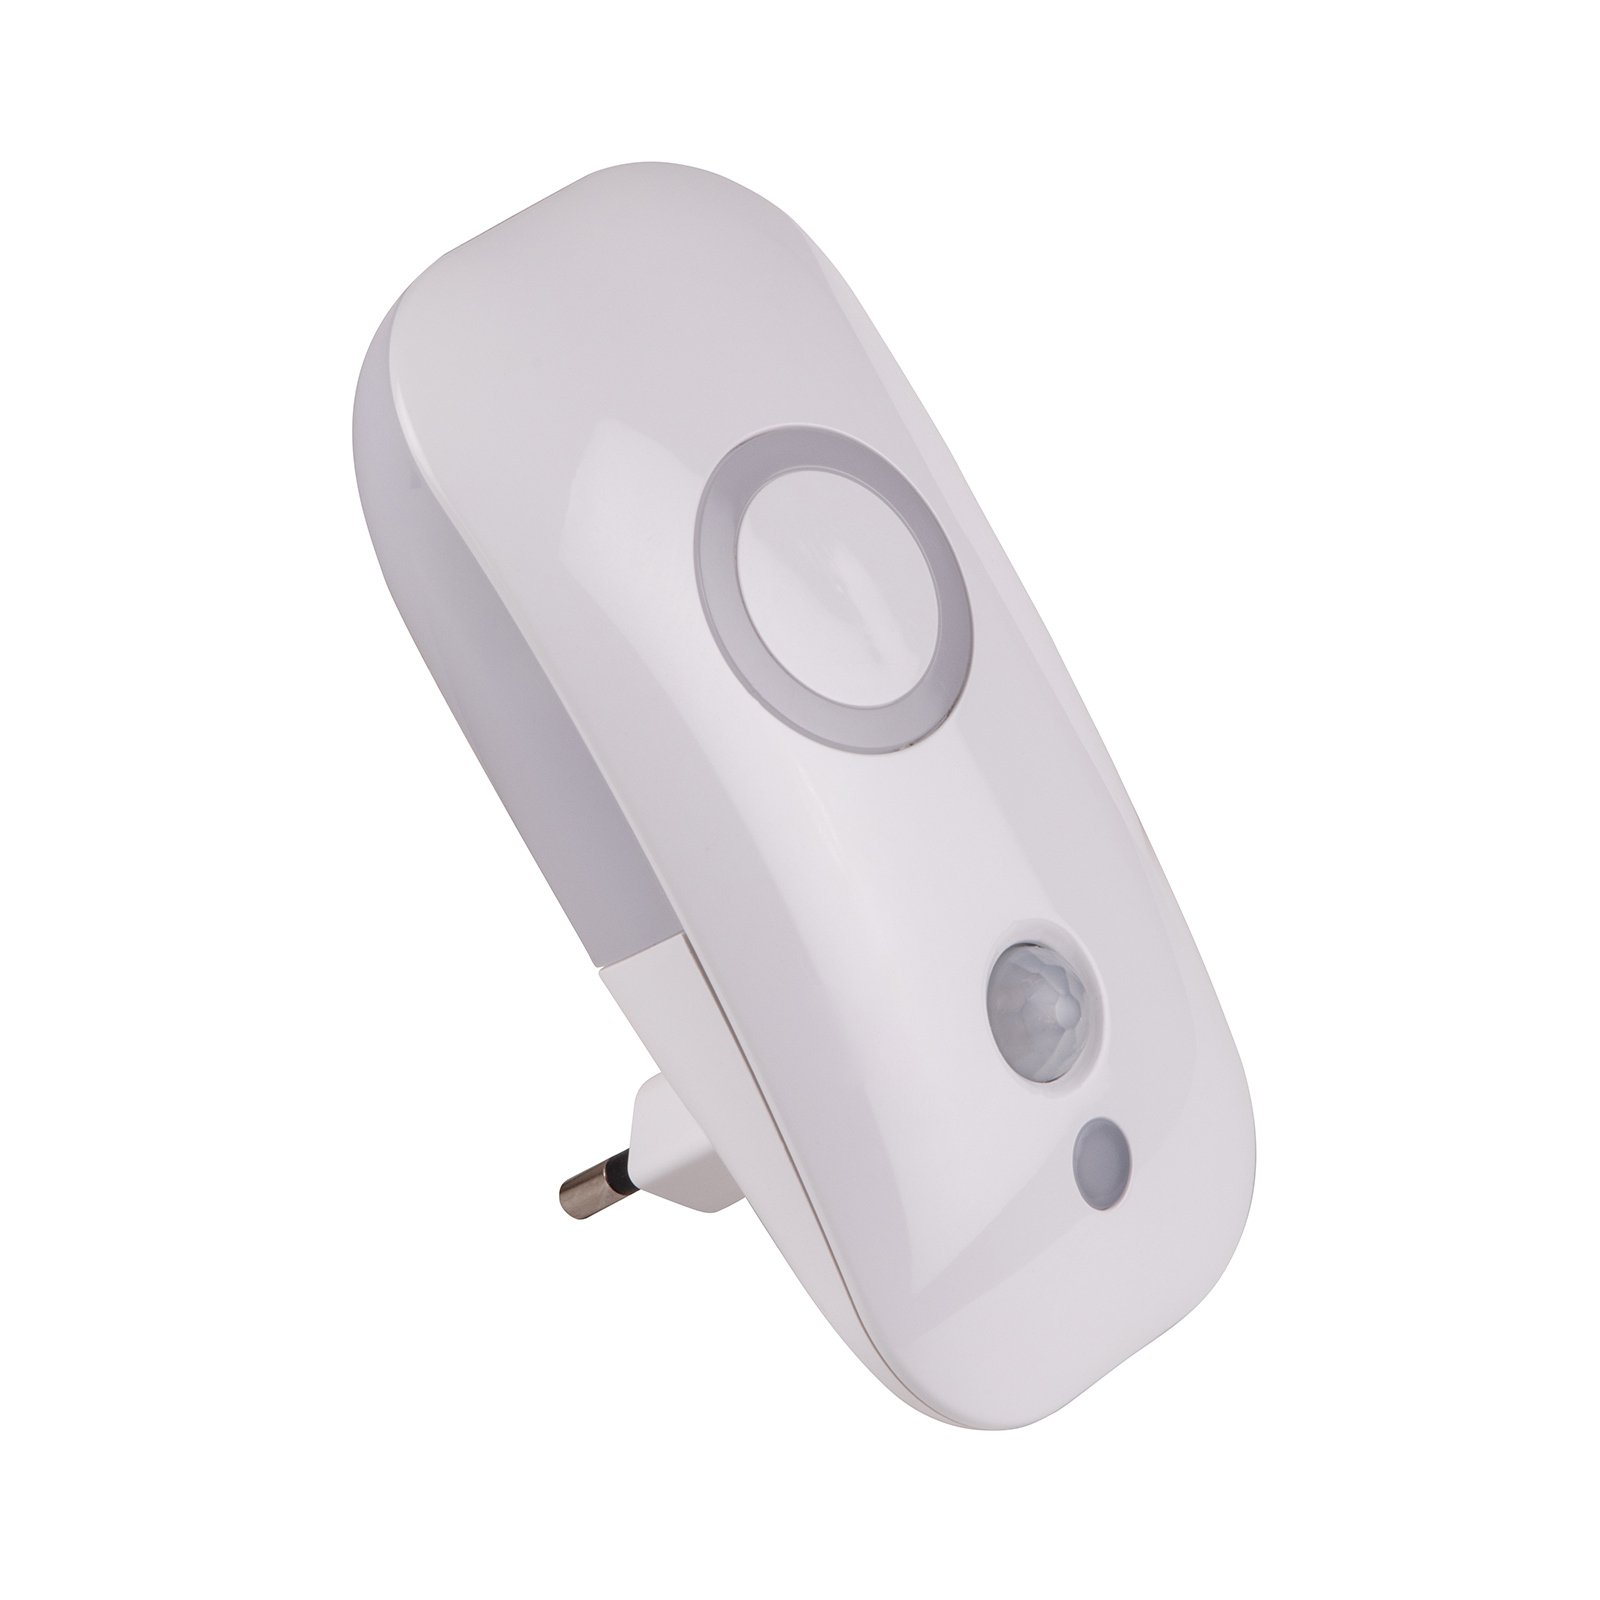 Nodig hebben straal woede Dora - LED nachtlampje voor stopcontact m sensor | Lampen24.nl